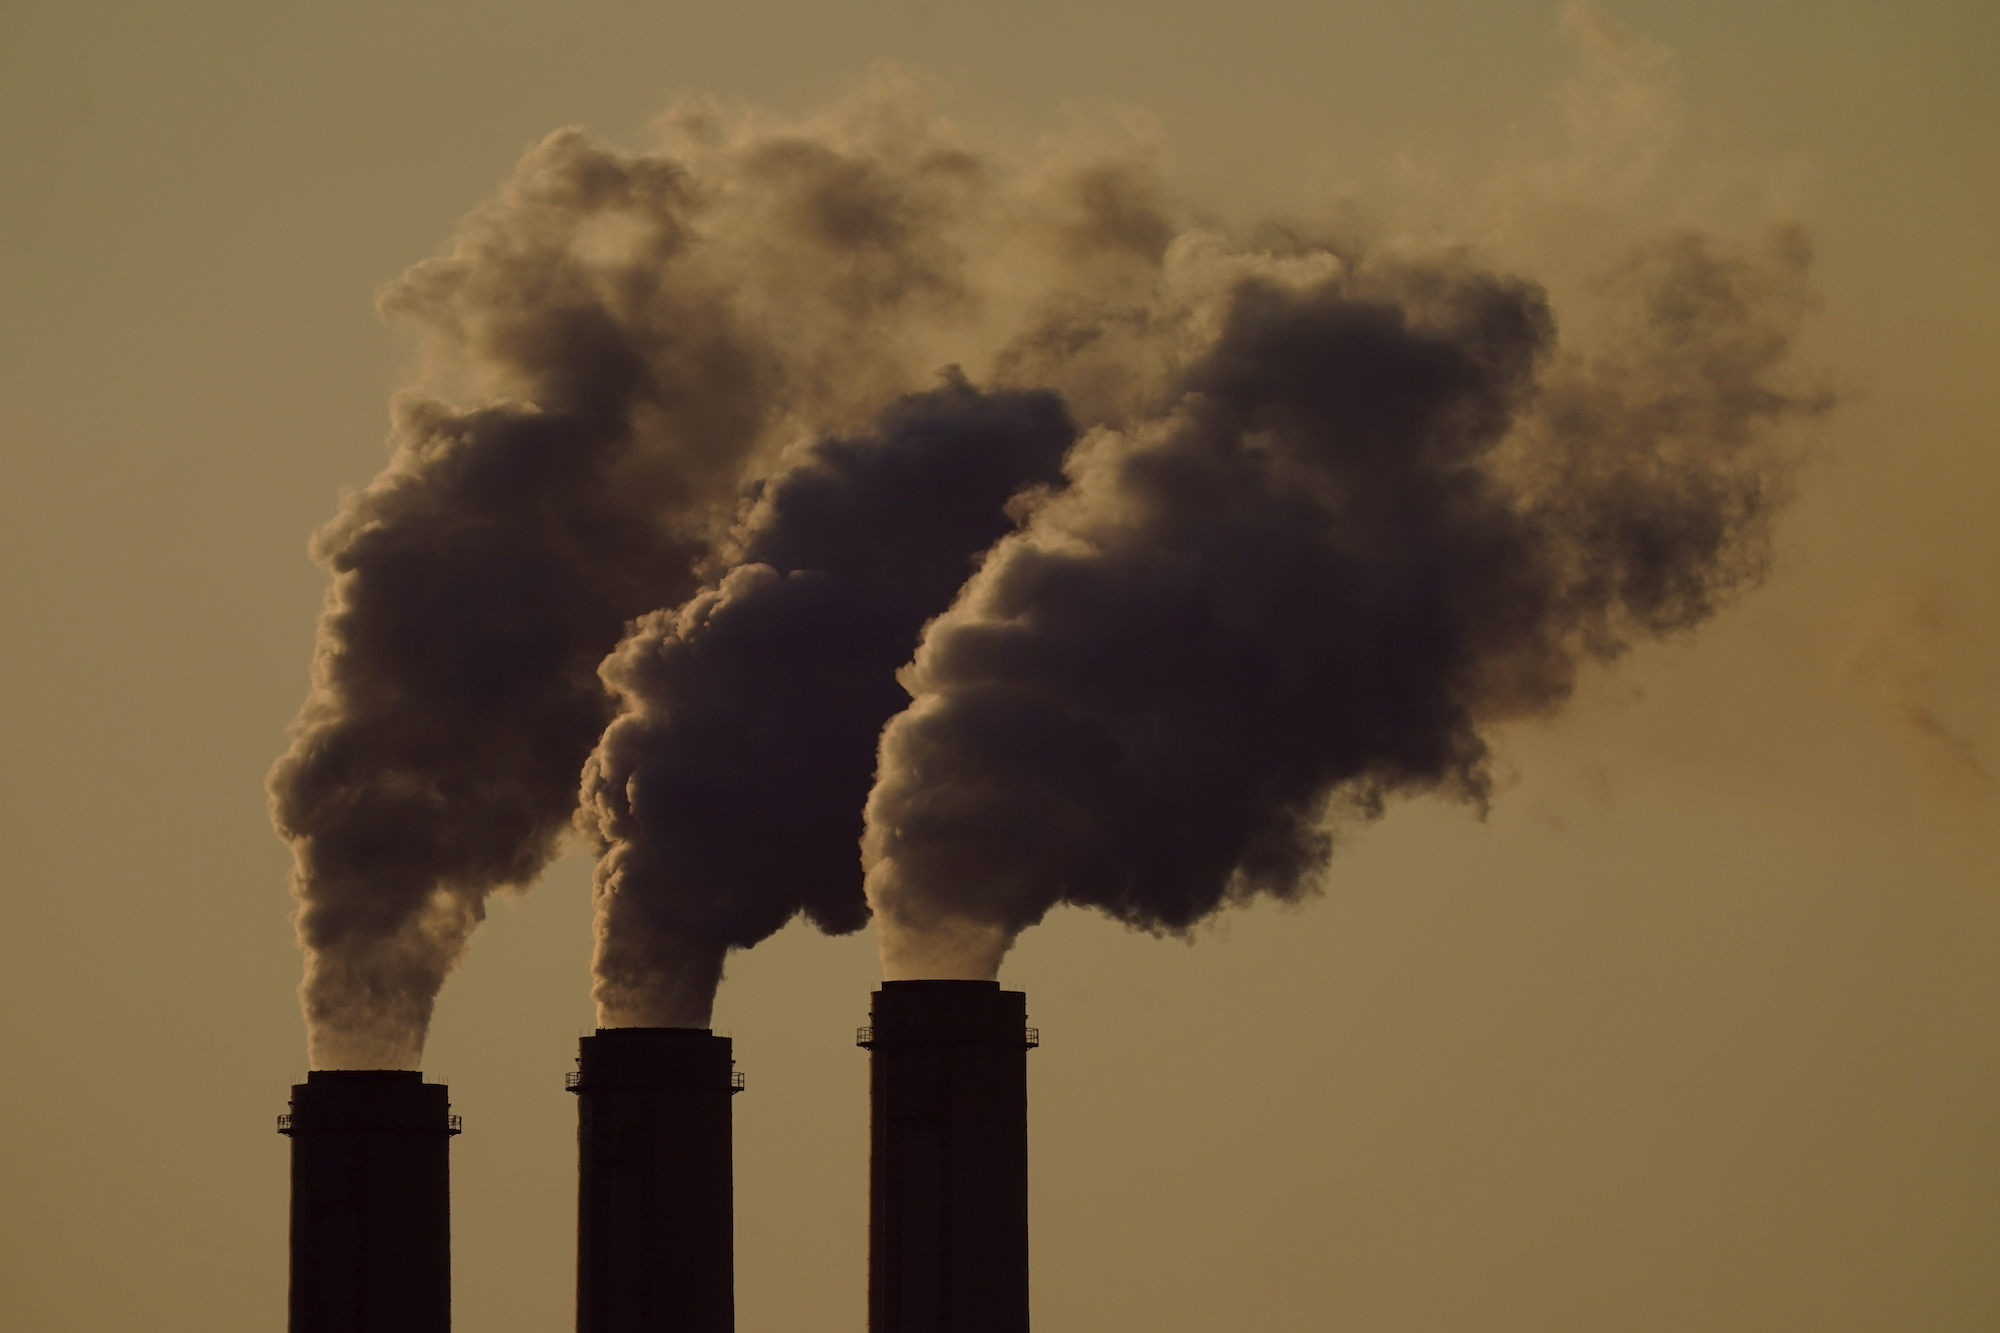 Έκθεση: Η ατμοσφαιρική ρύπανση είναι η σοβαρότερη απειλή για την ανθρώπινη υγεία παγκοσμίως